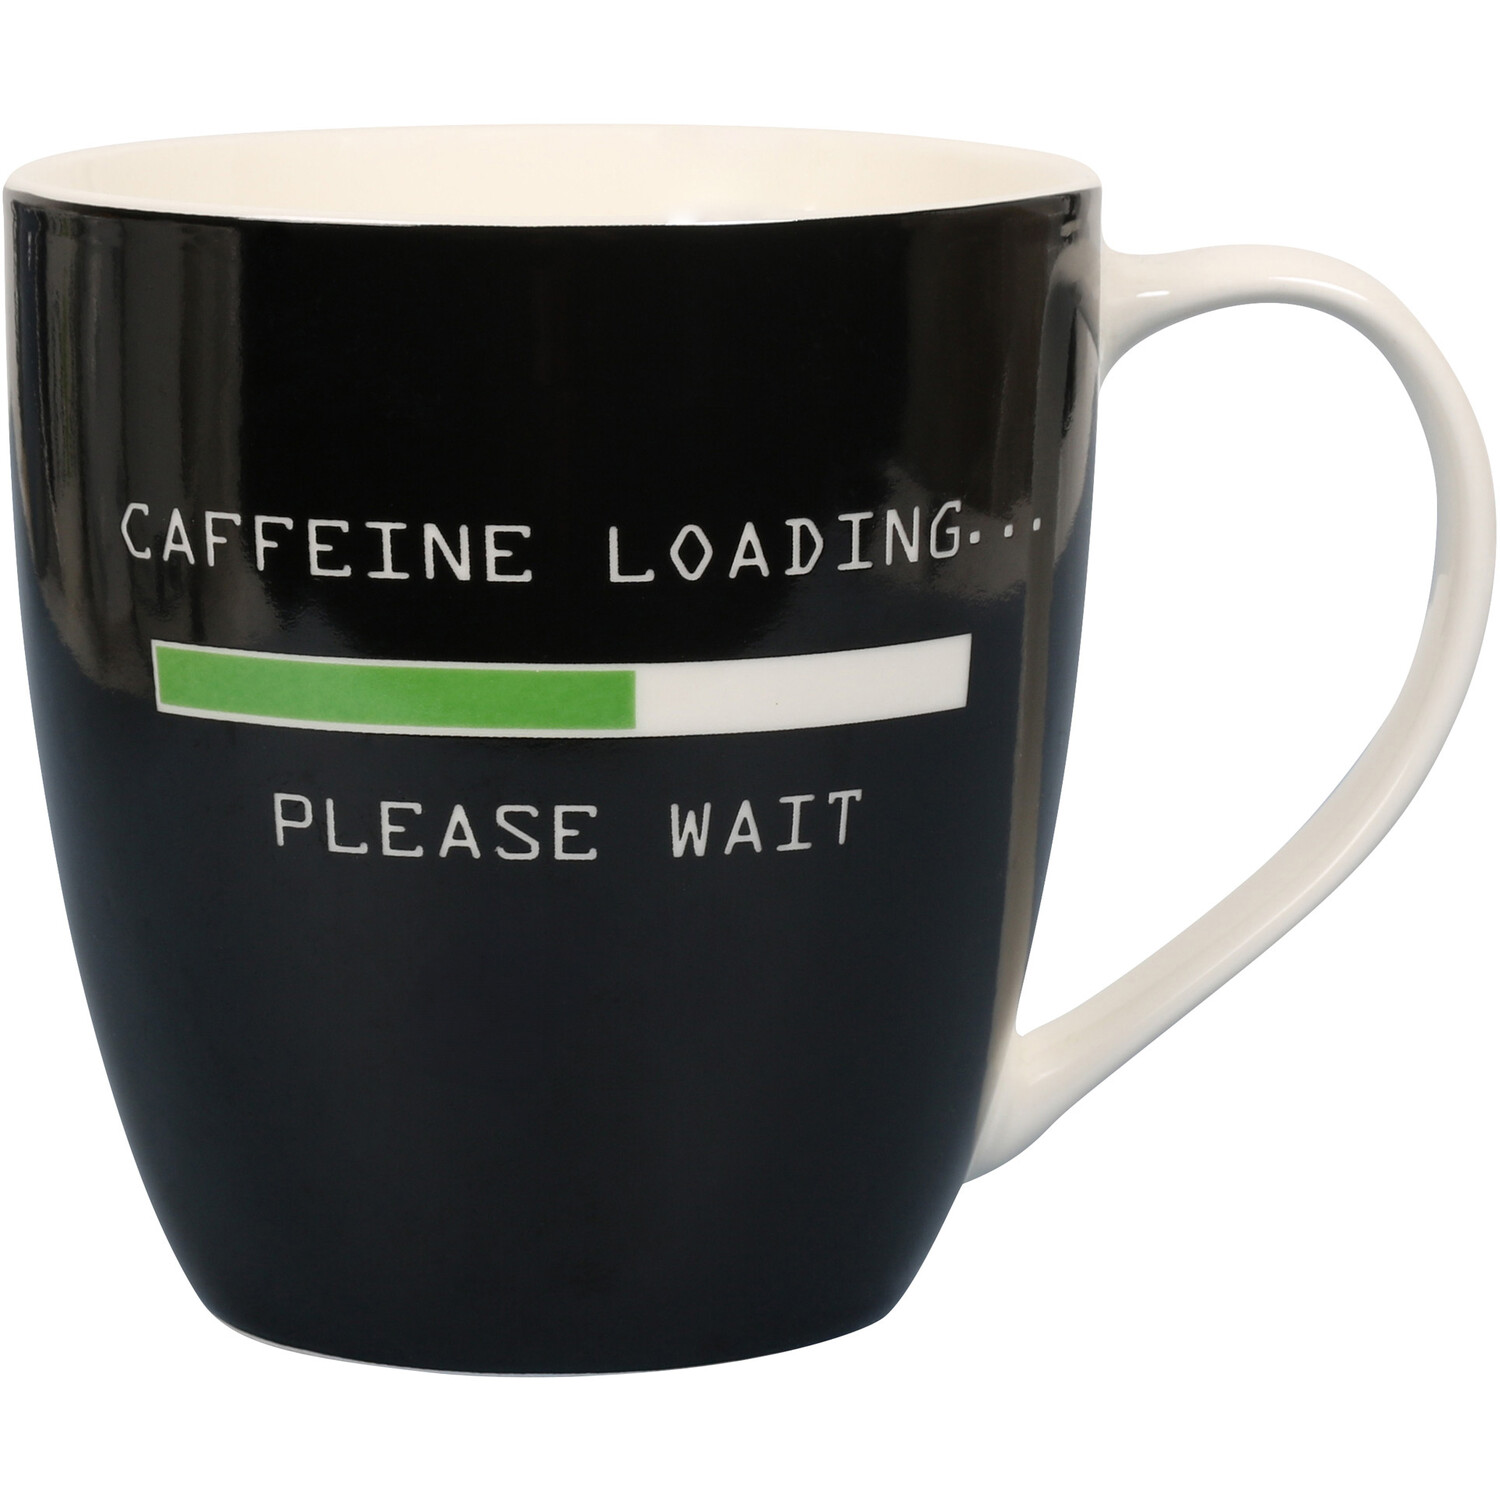 Caffeine Loading Jumbo Mug - Black Image 1